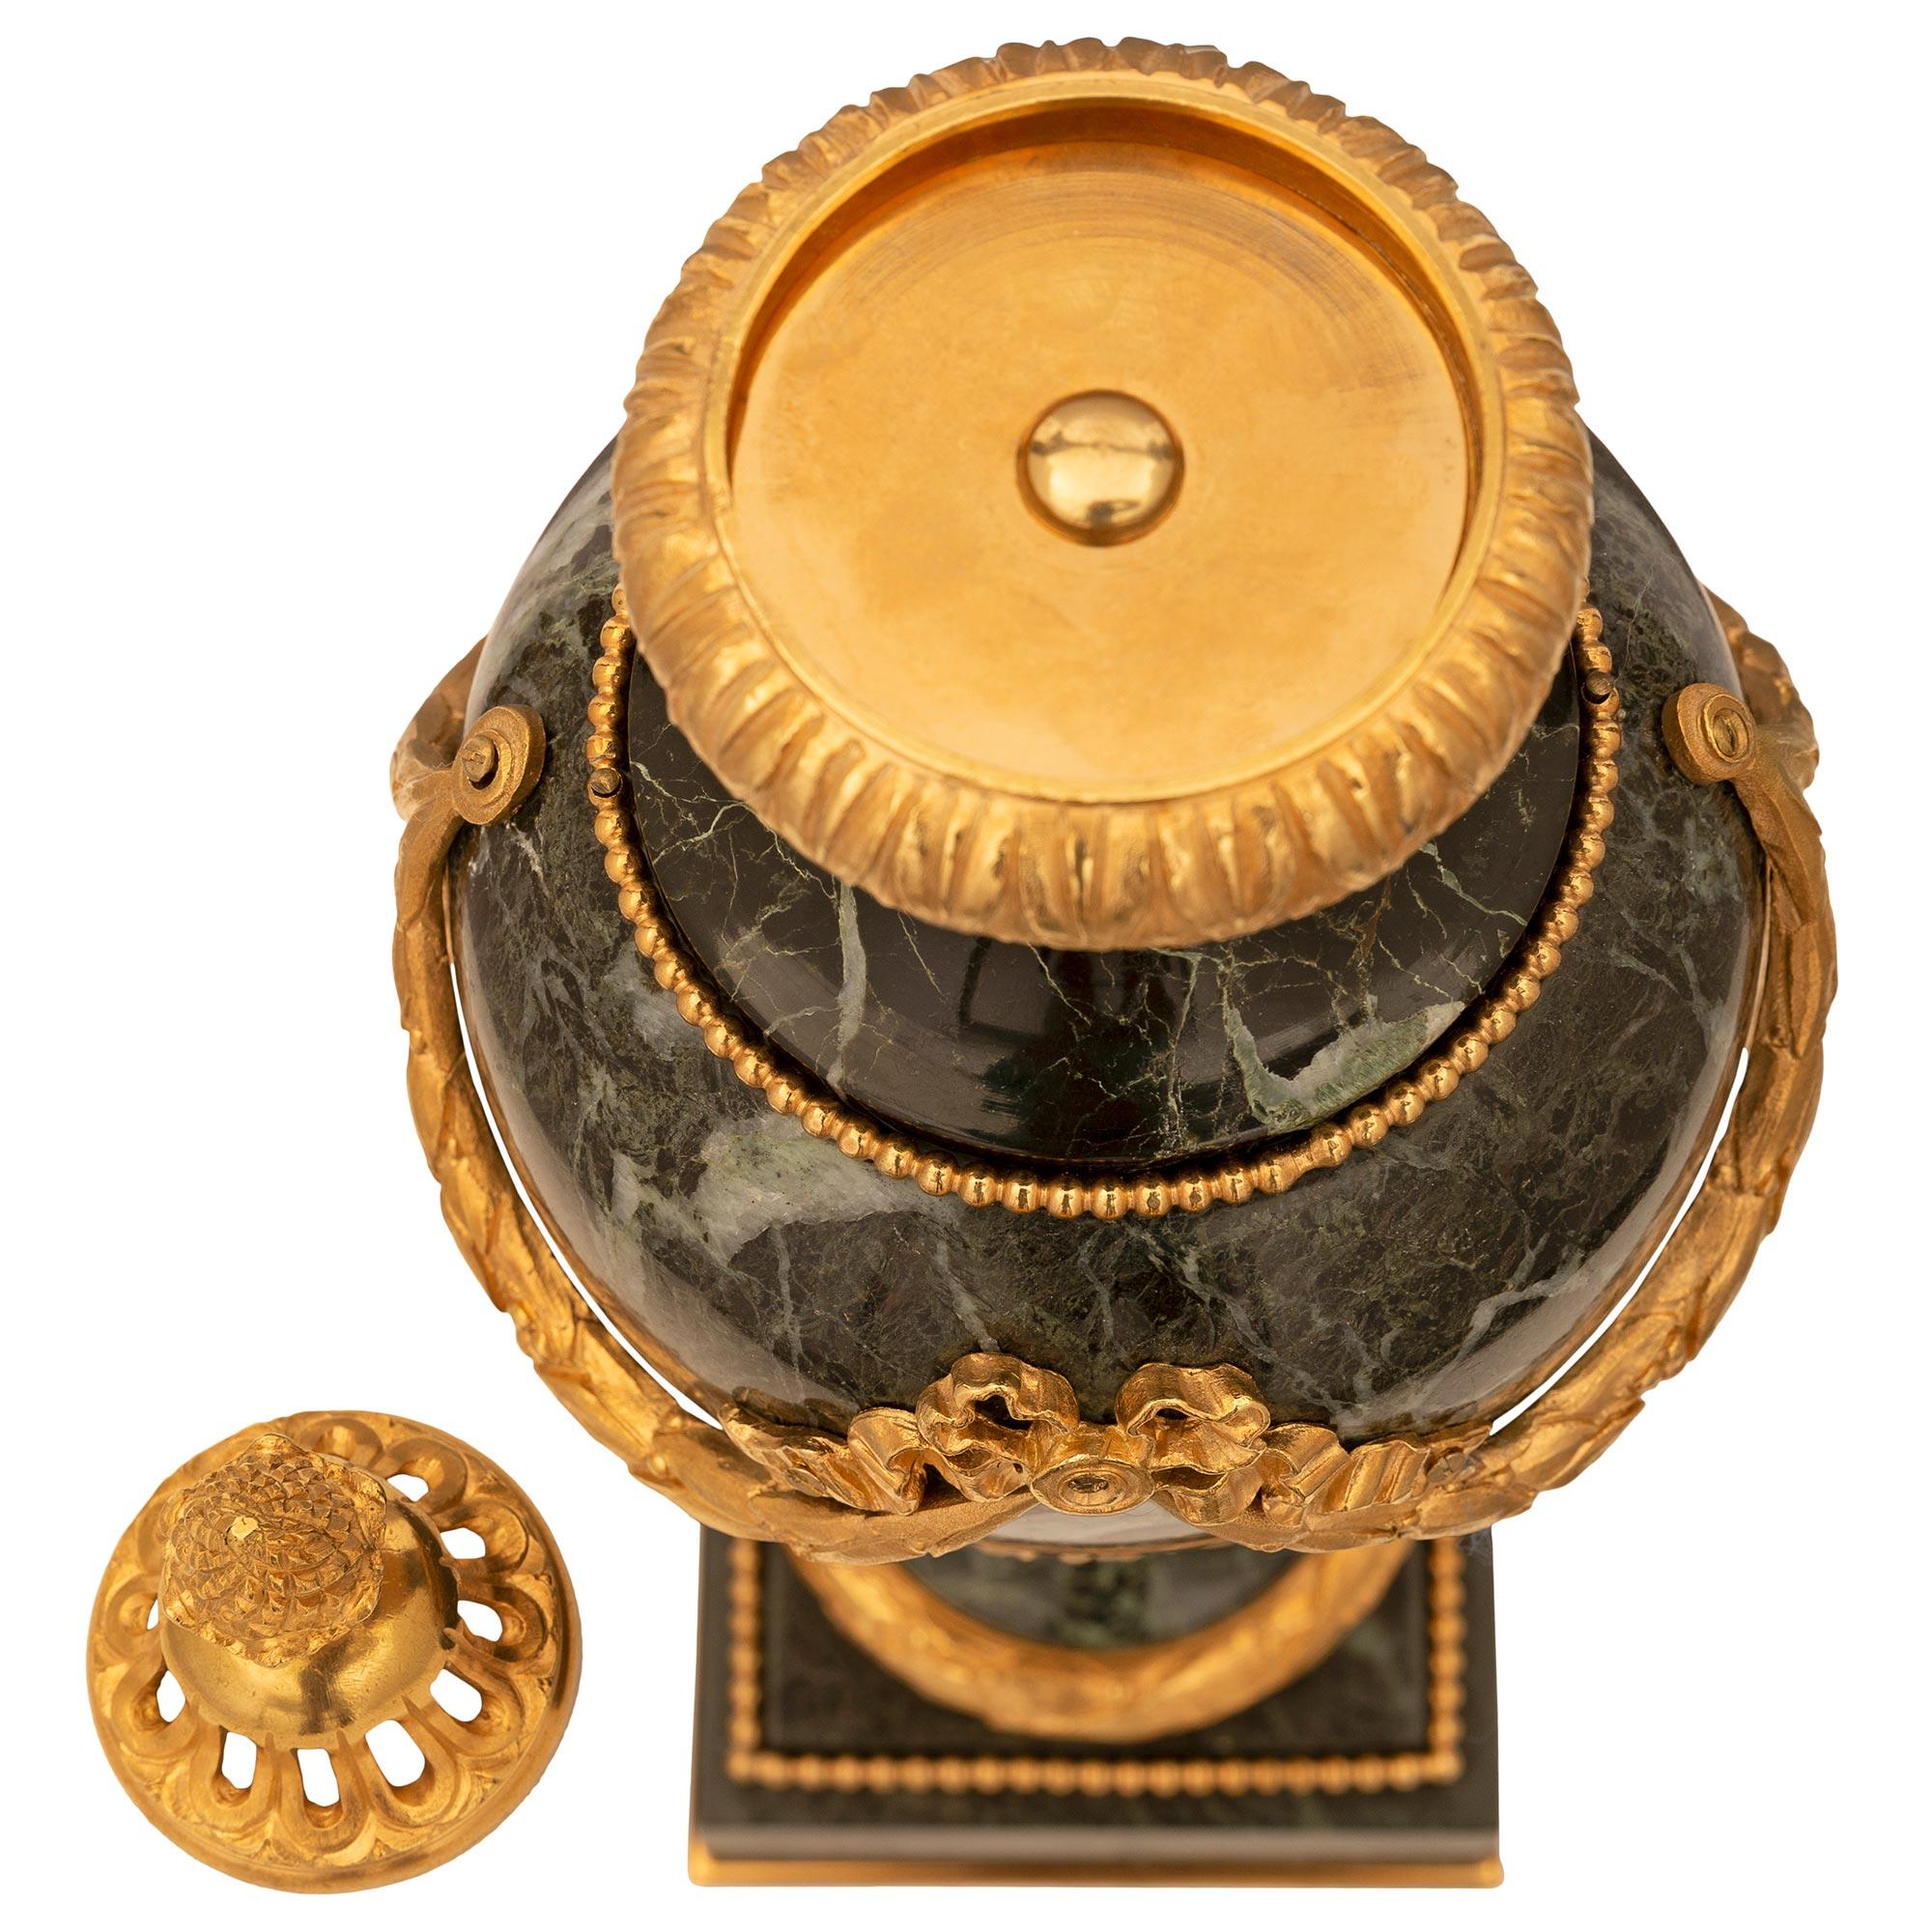 Ein sehr elegantes Paar französischer Urnen mit Deckel aus Marmor und Ormolu im Stil Louis XVI des 19. Jahrhunderts. Jede Urne steht auf einem quadratischen Sockel mit einem feinen unteren Ormolu-Filet und einem umlaufenden Ormolu-Perlenband. Der